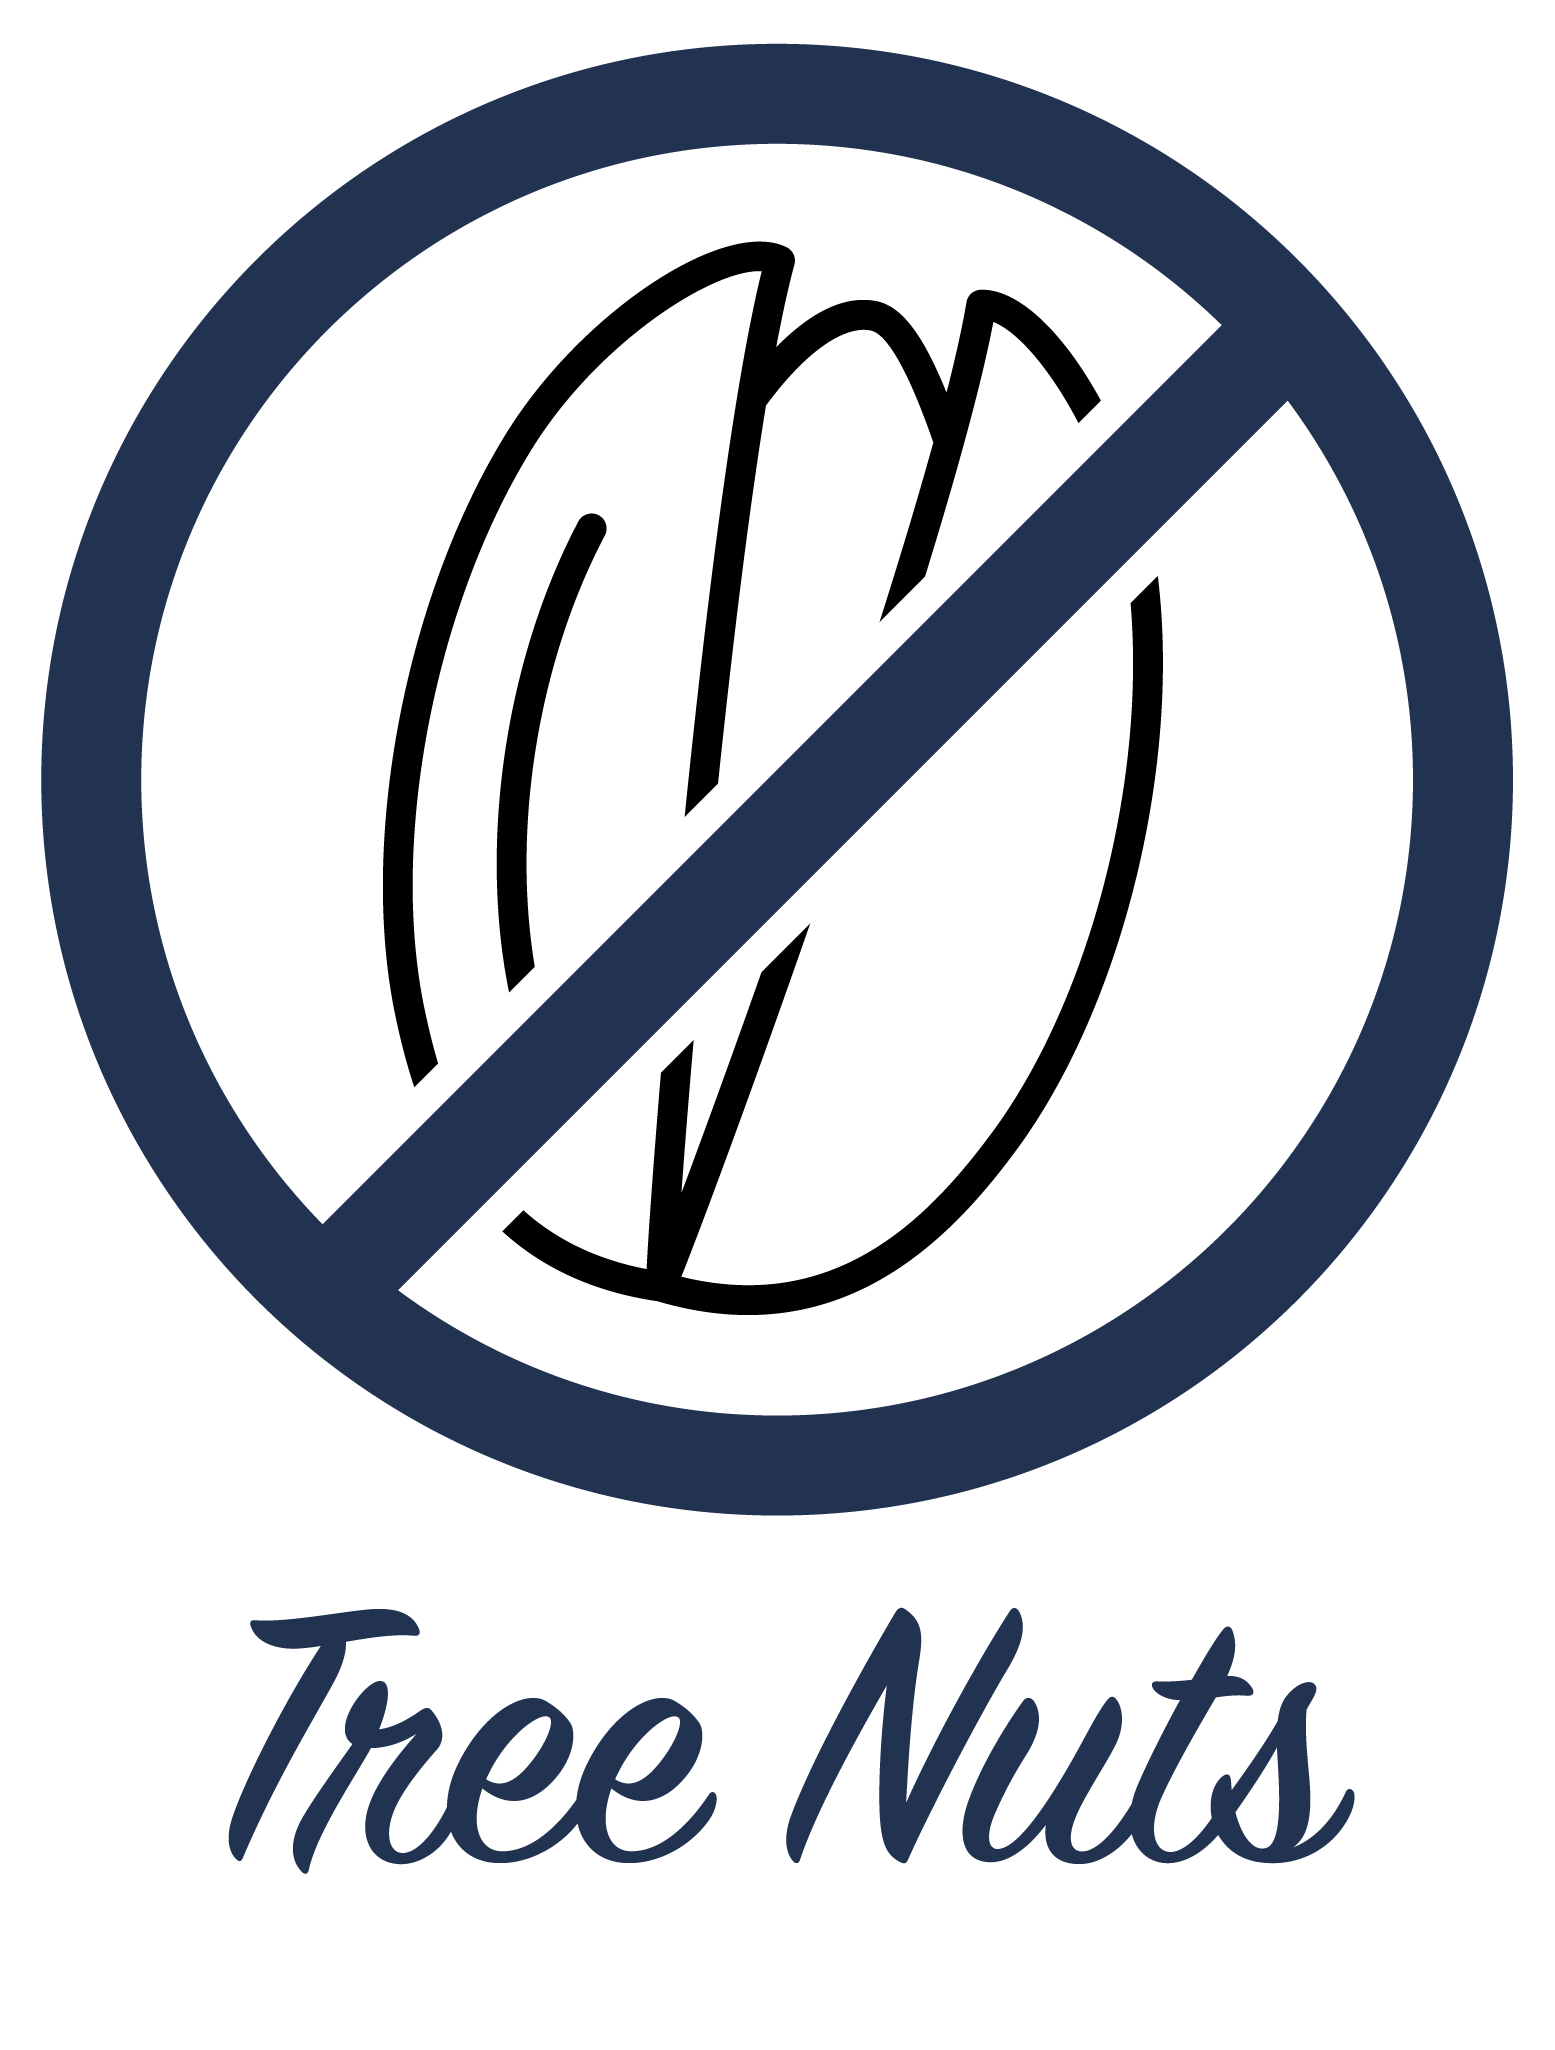 No Tree Nuts